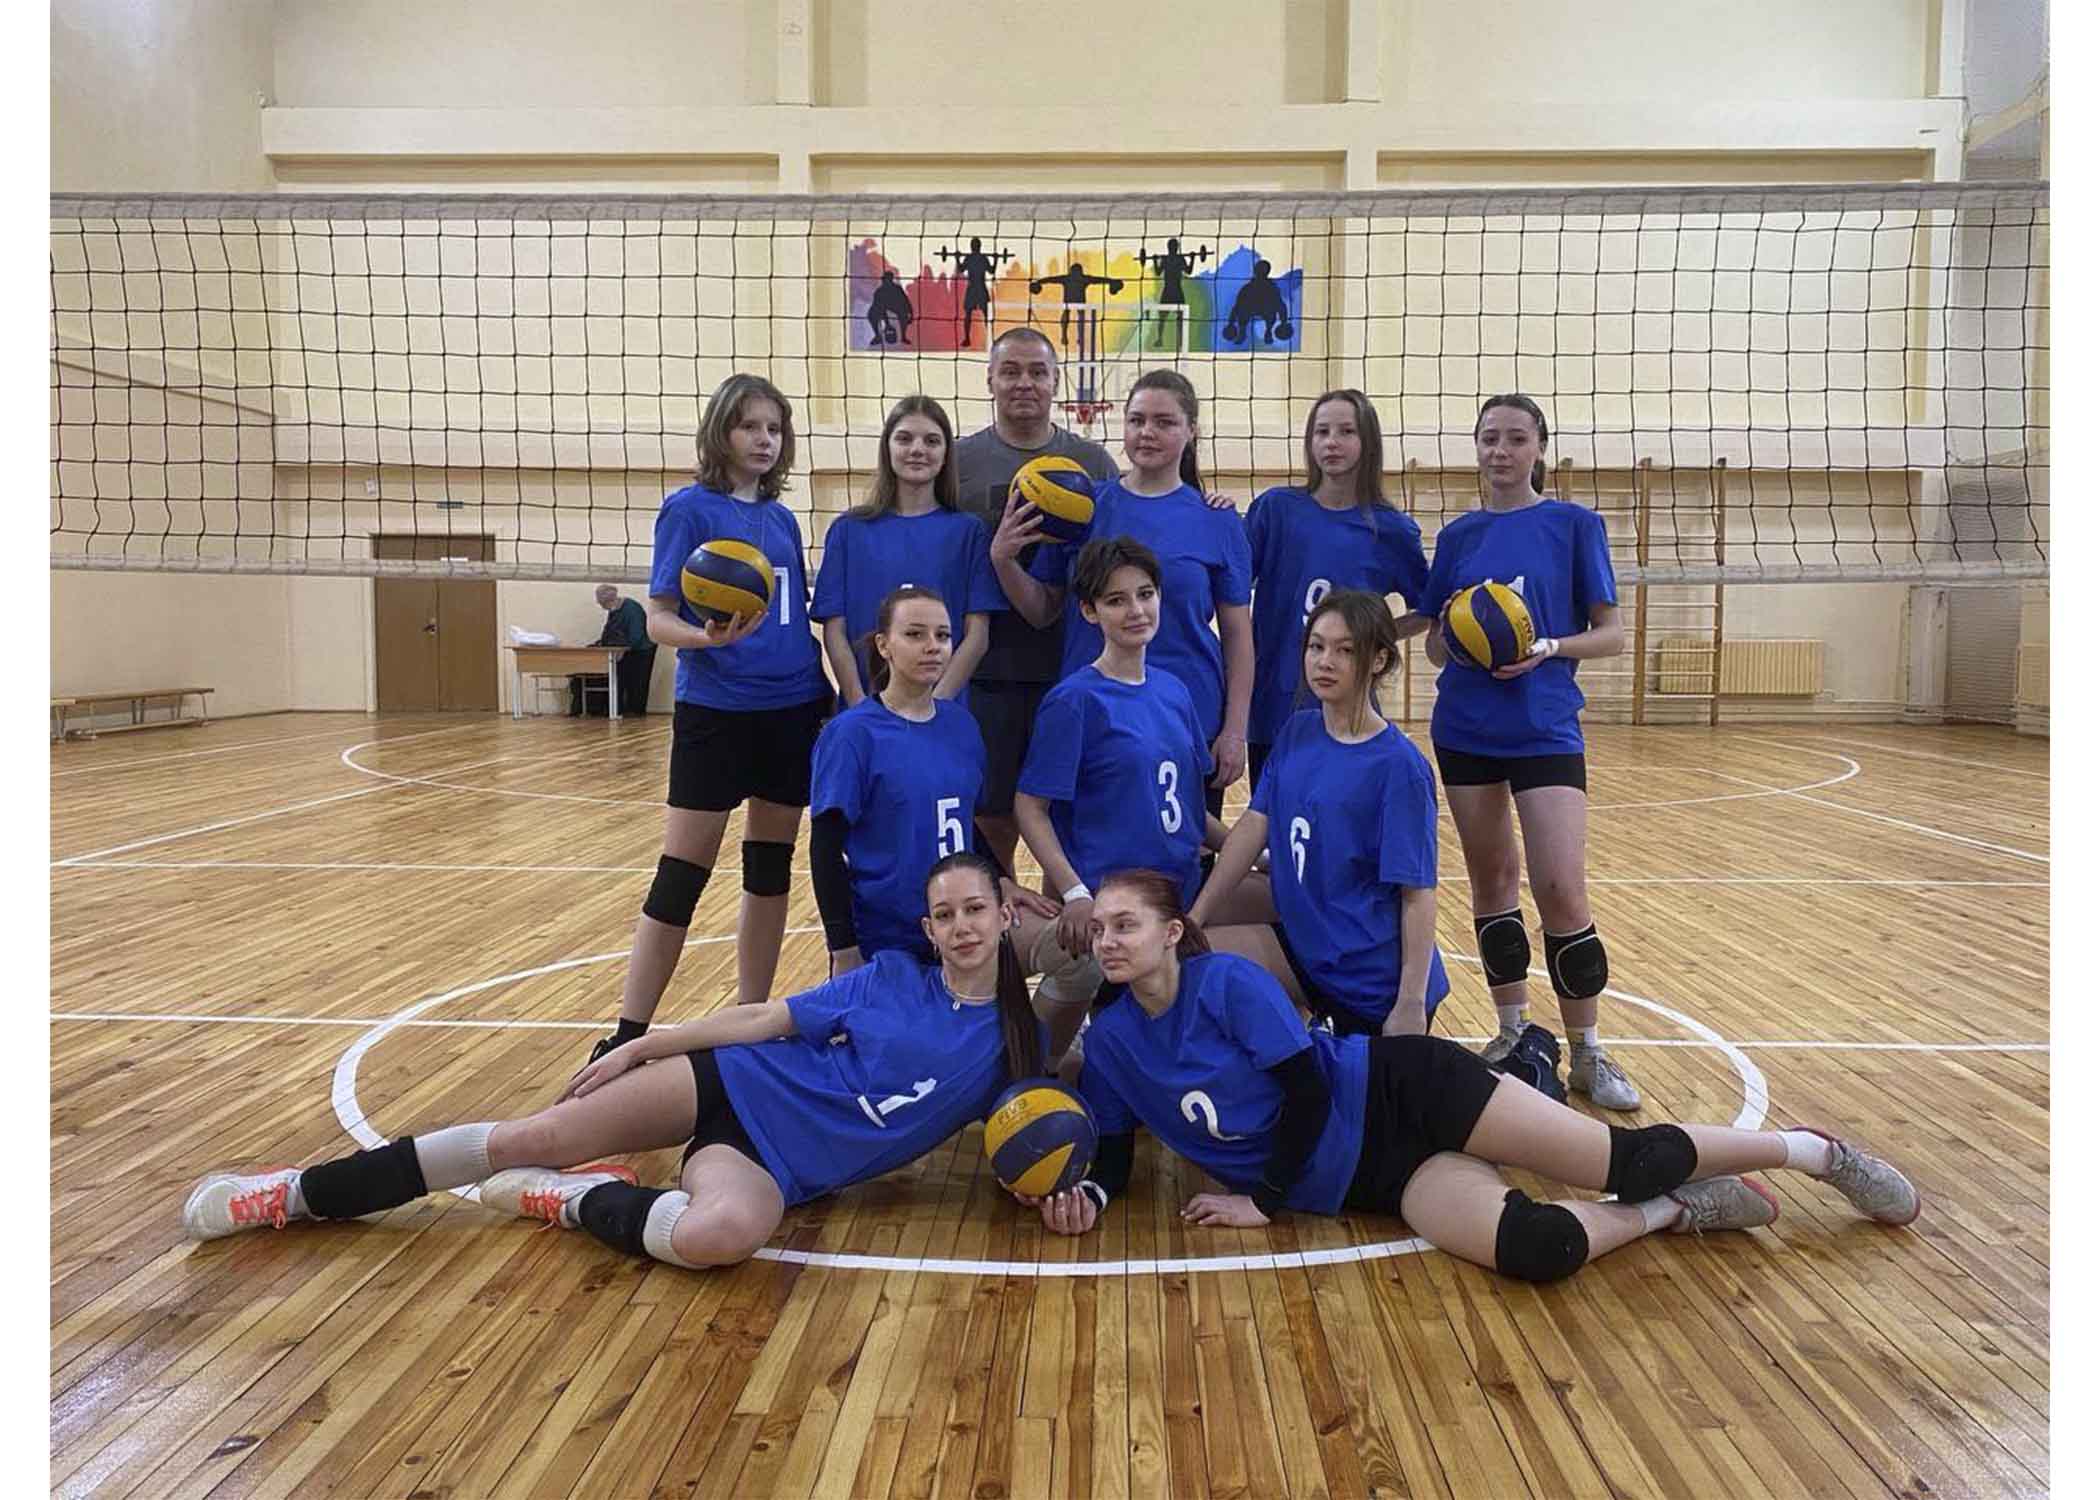 Поздравляем  команду учреждения образования по волейболу занявшую II место в городских соревнованиях по волейболу среди юношей и девушек